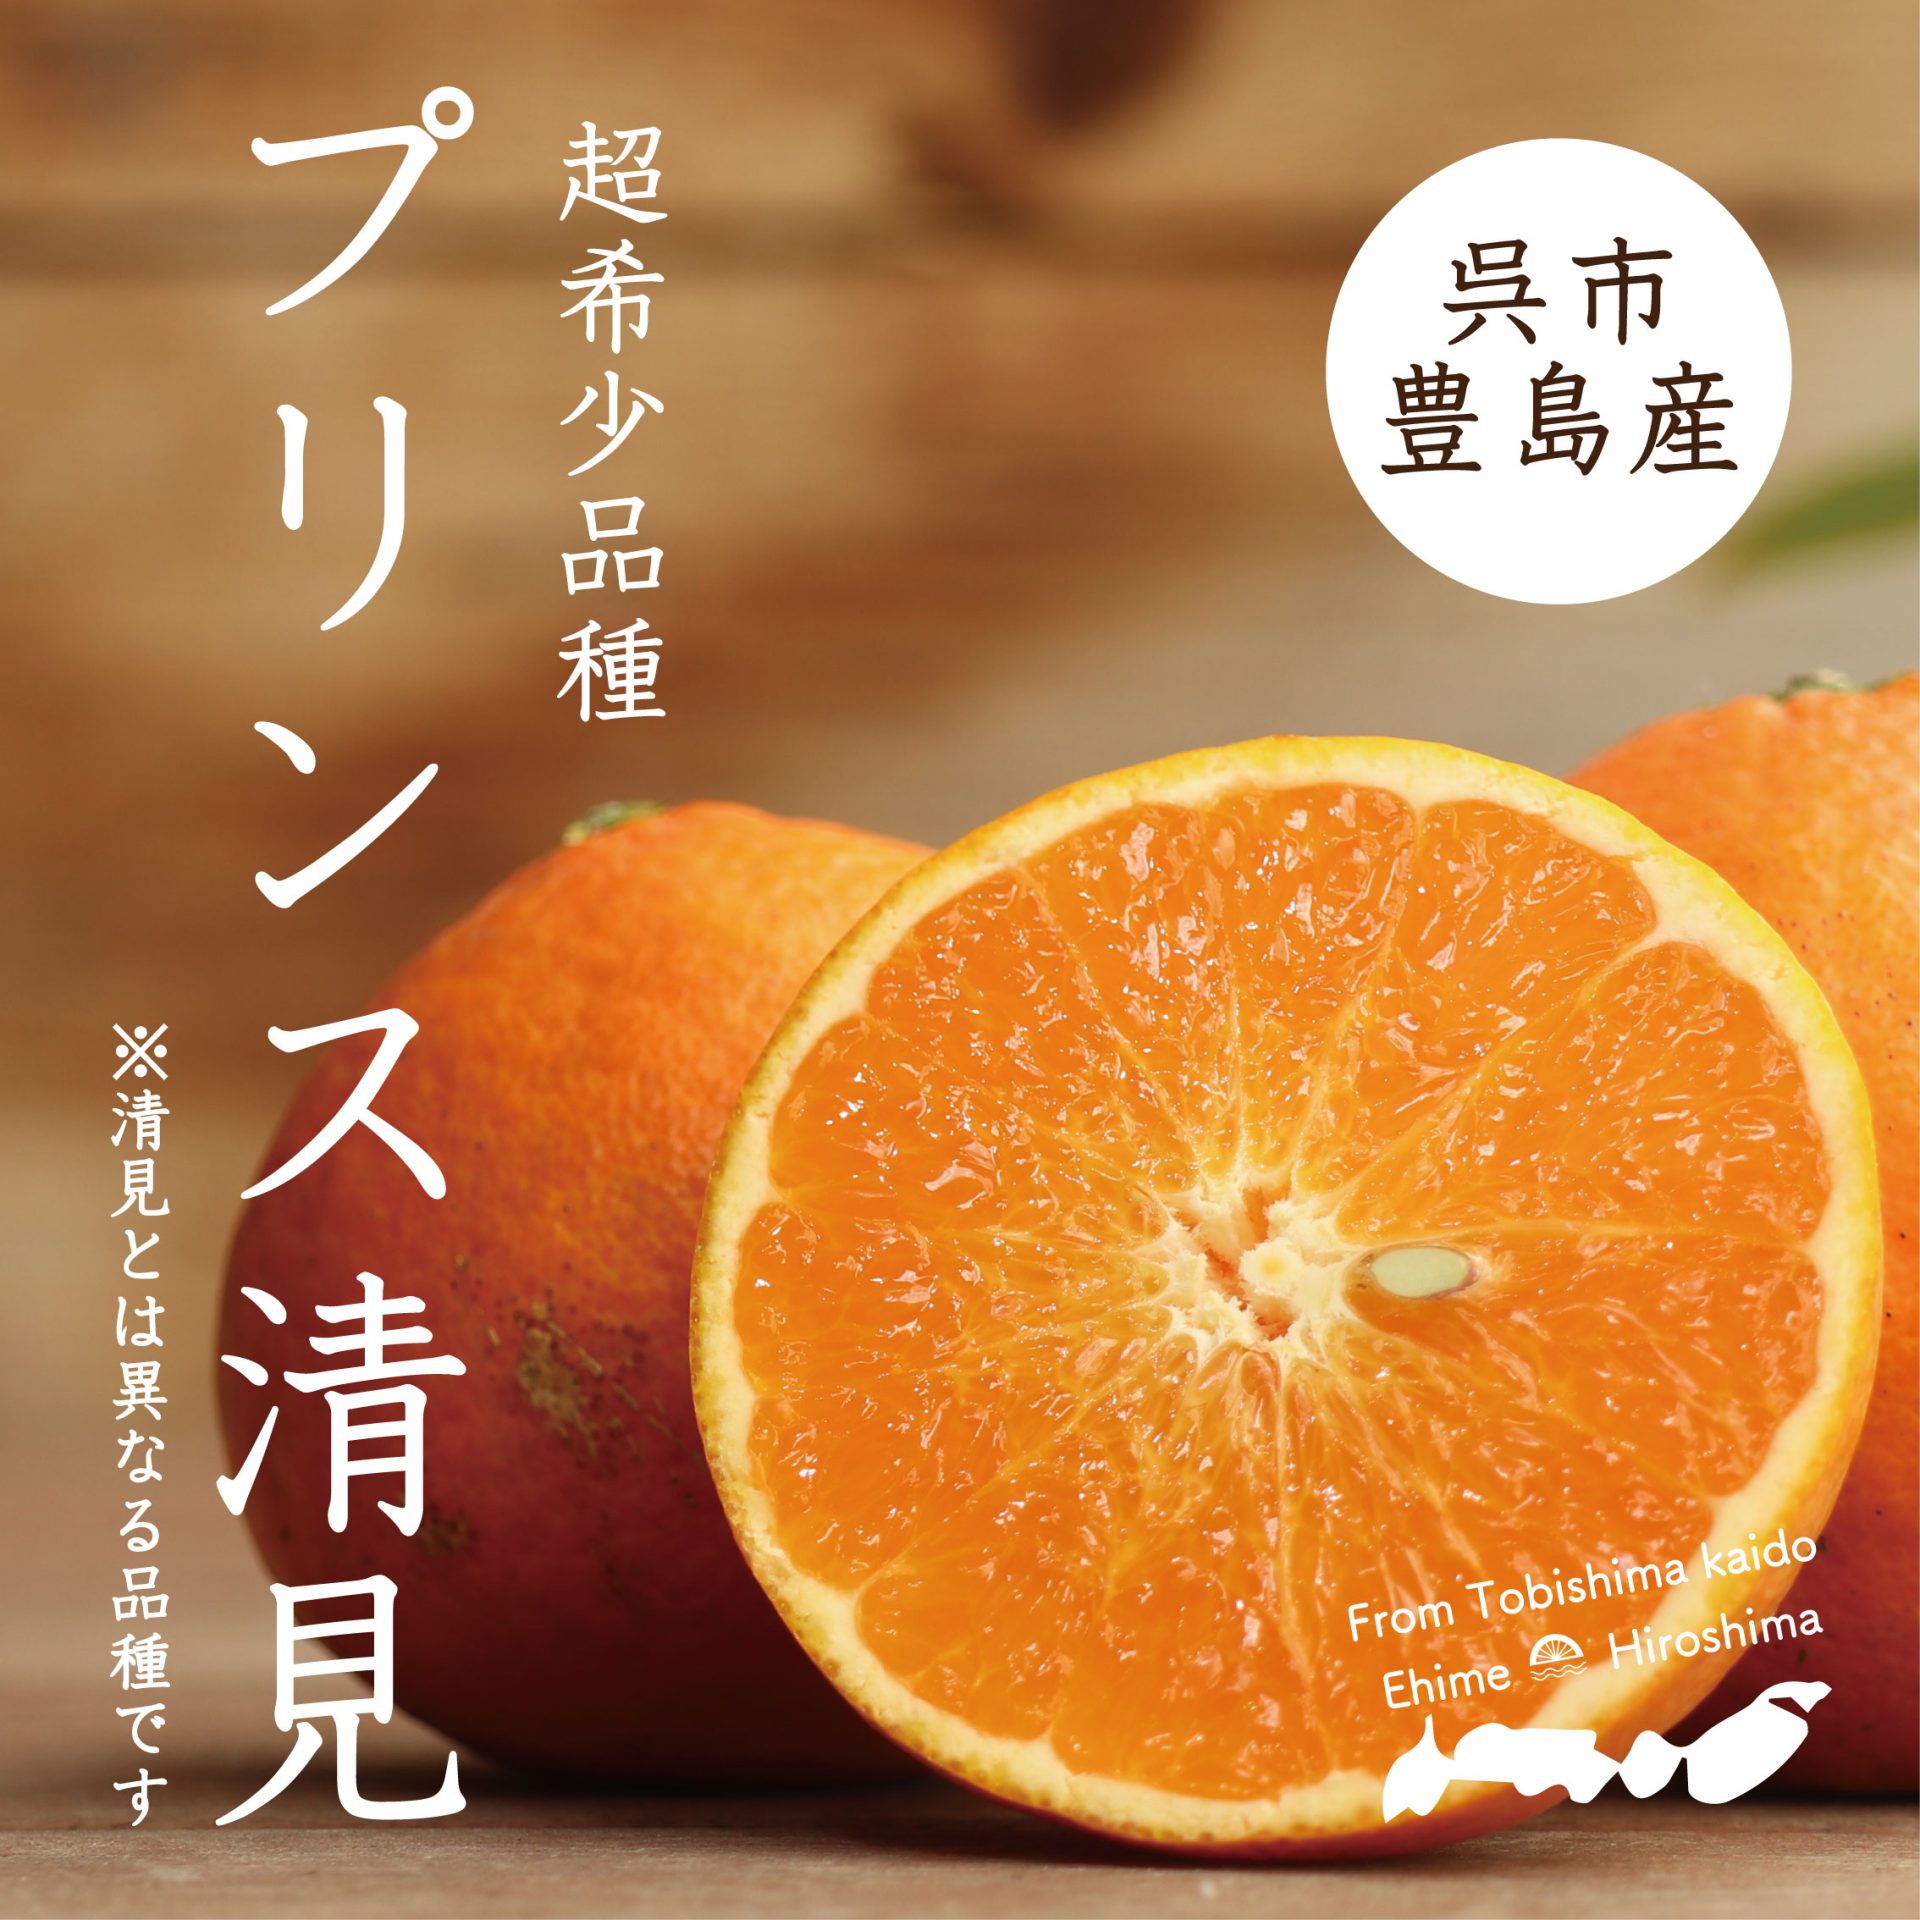 人気の超貴重品種！「プリンス清見」は清見とは異なる品種で、清見×トロビタオレンジの交配種です。果肉や内皮が柔らかくジューシーで、程よい酸味と濃い甘さにオレンジ香が特徴です。数量限定販売です。